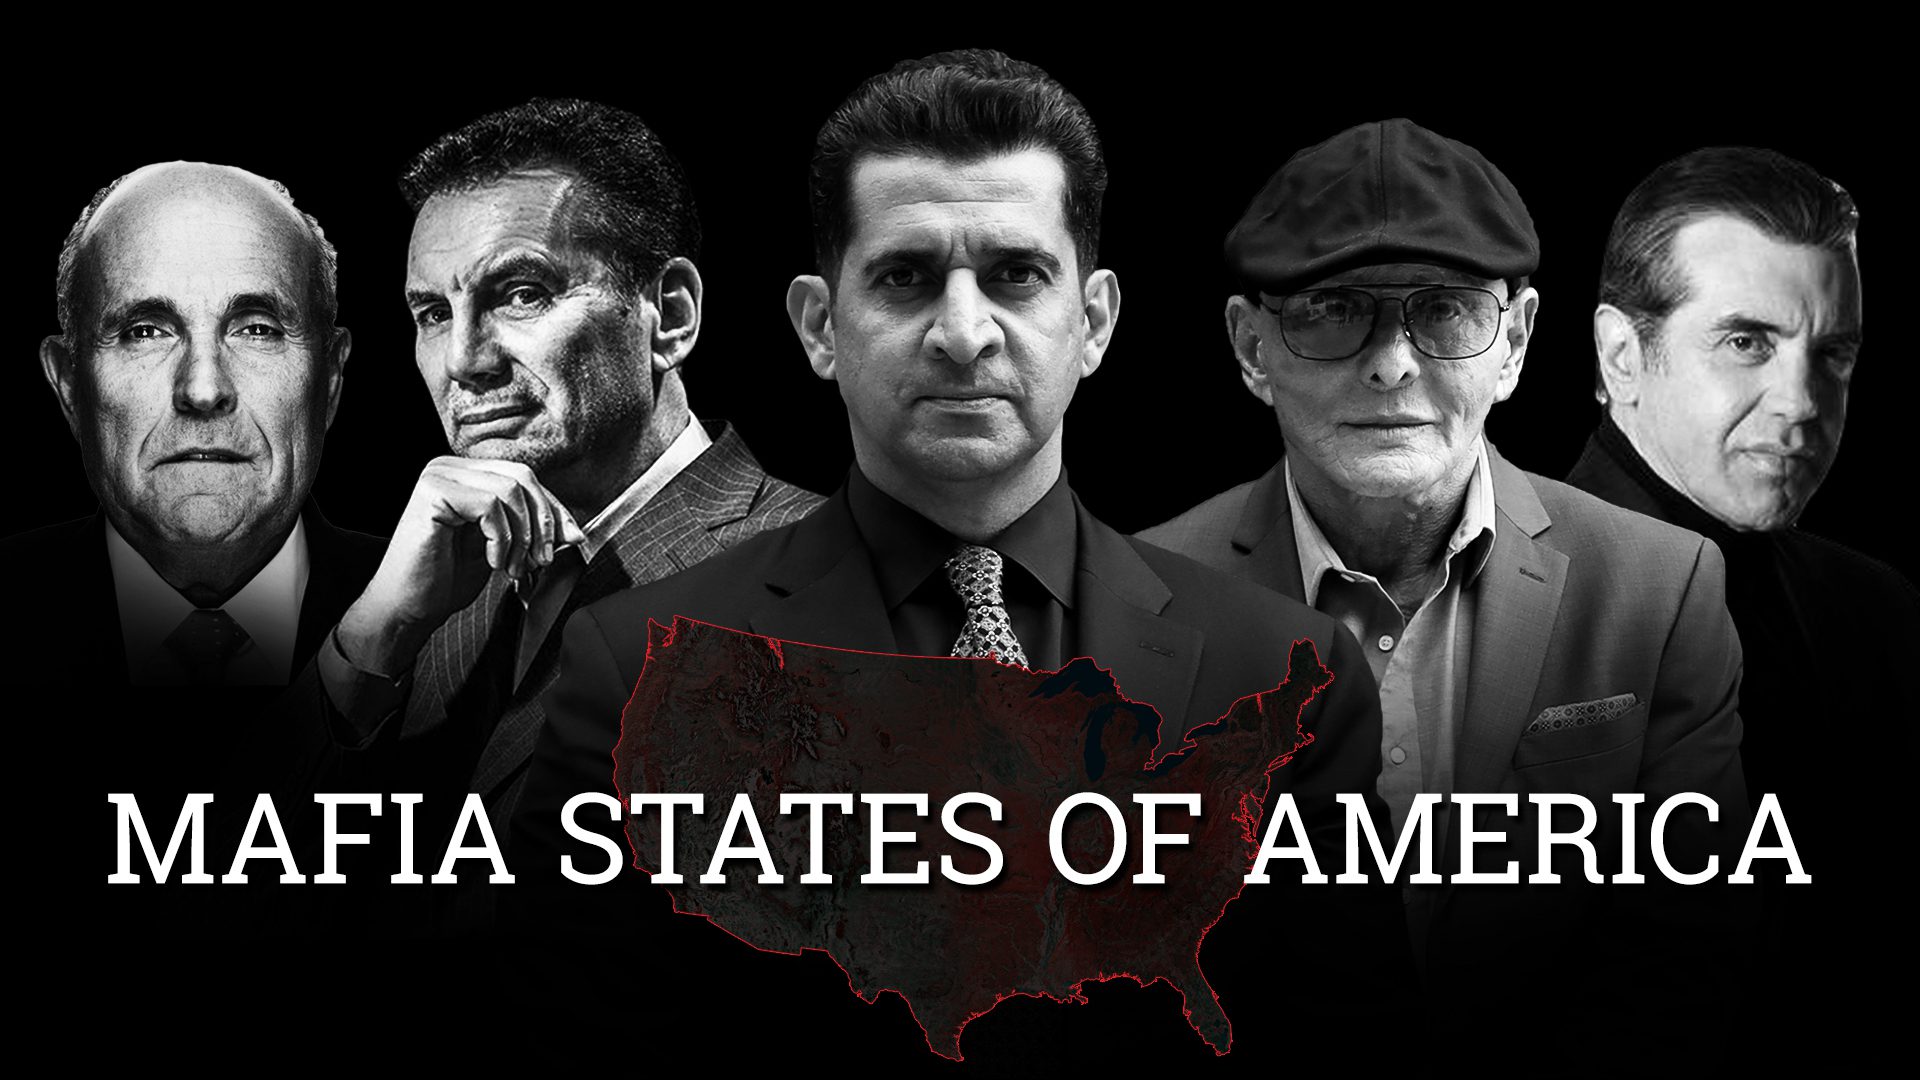 The American Mafia